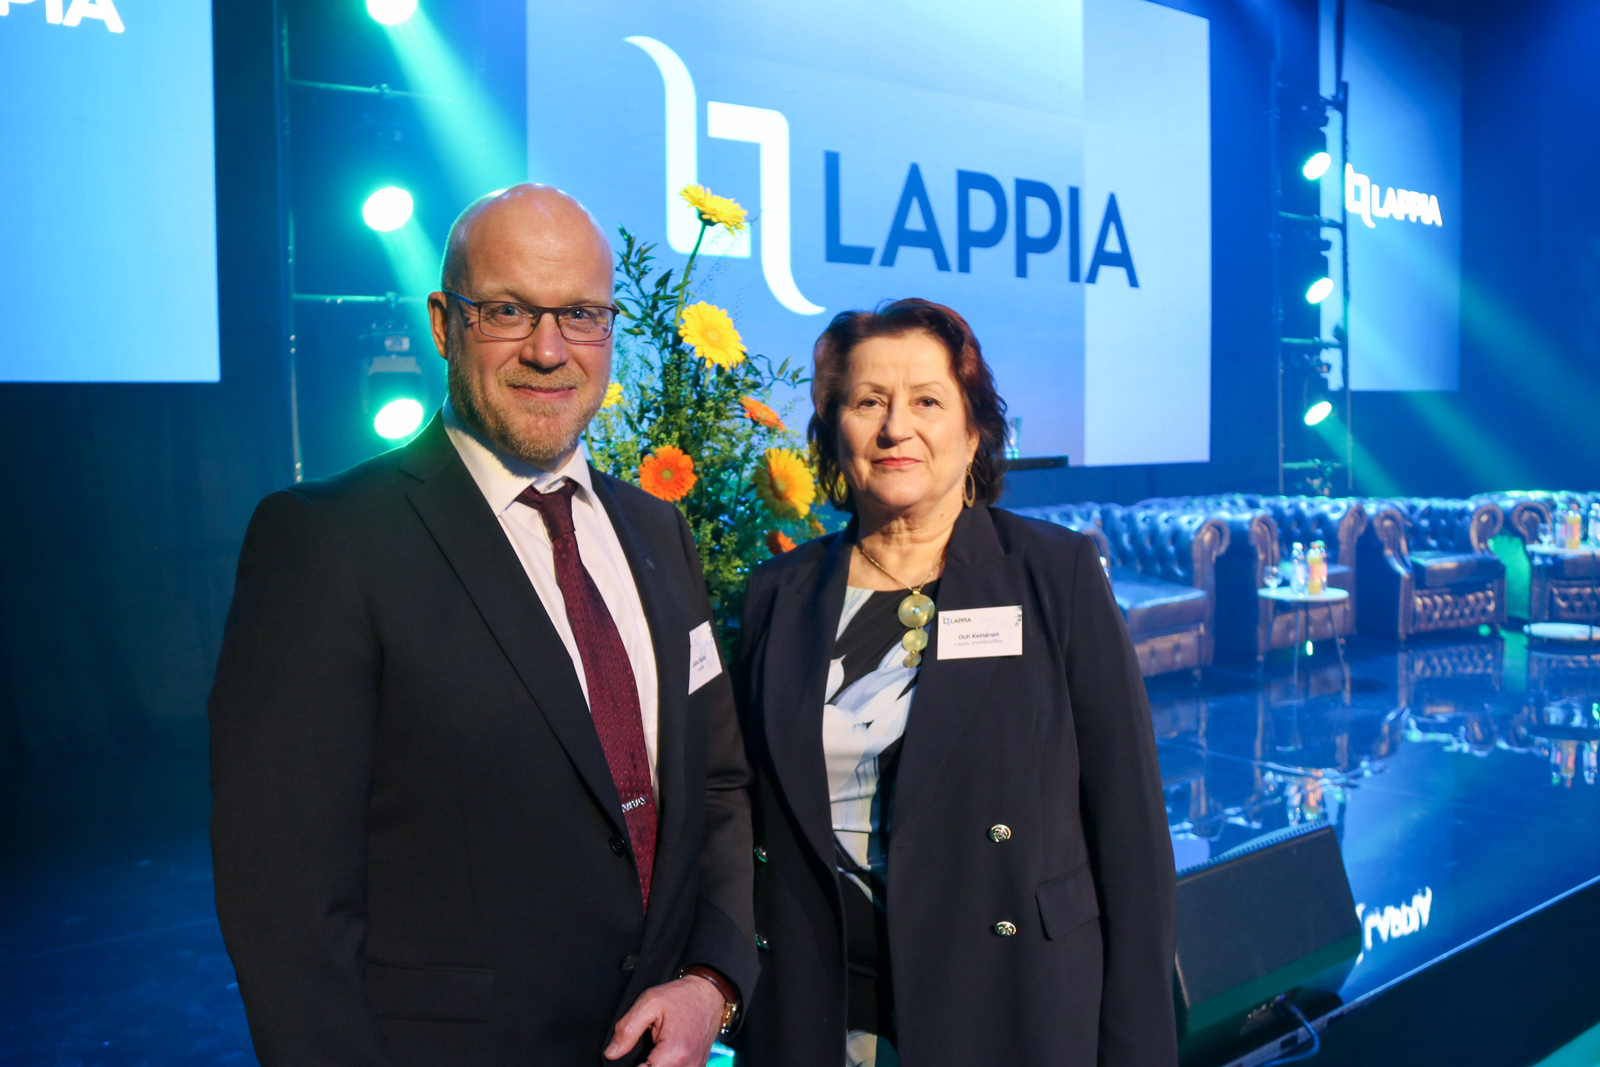 Johtaja Juha Kallo ja yhtymähallituksen puheenjohtaja Outi Keinänen juhlatilassa taustalla kukka-asetelma ja Lappian logo.